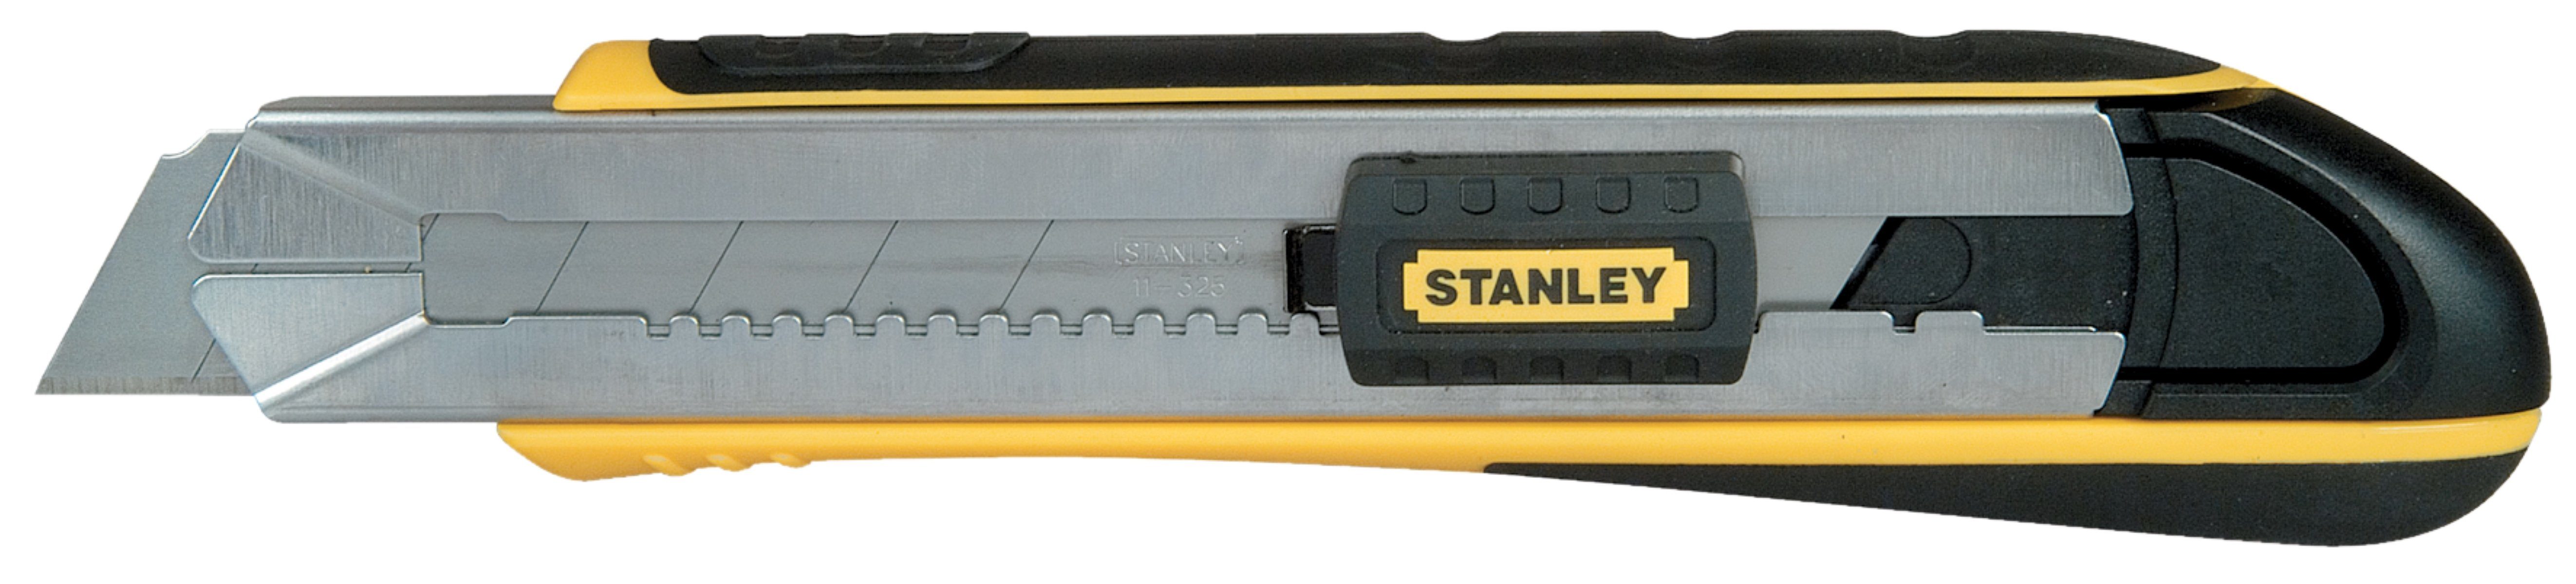 STANLEY Cuttermesser 0-10-486 mit Magazin FatMax 25mm, Klinge: 2,50 cm, Länge 215 mm Verklemmen der Klinge